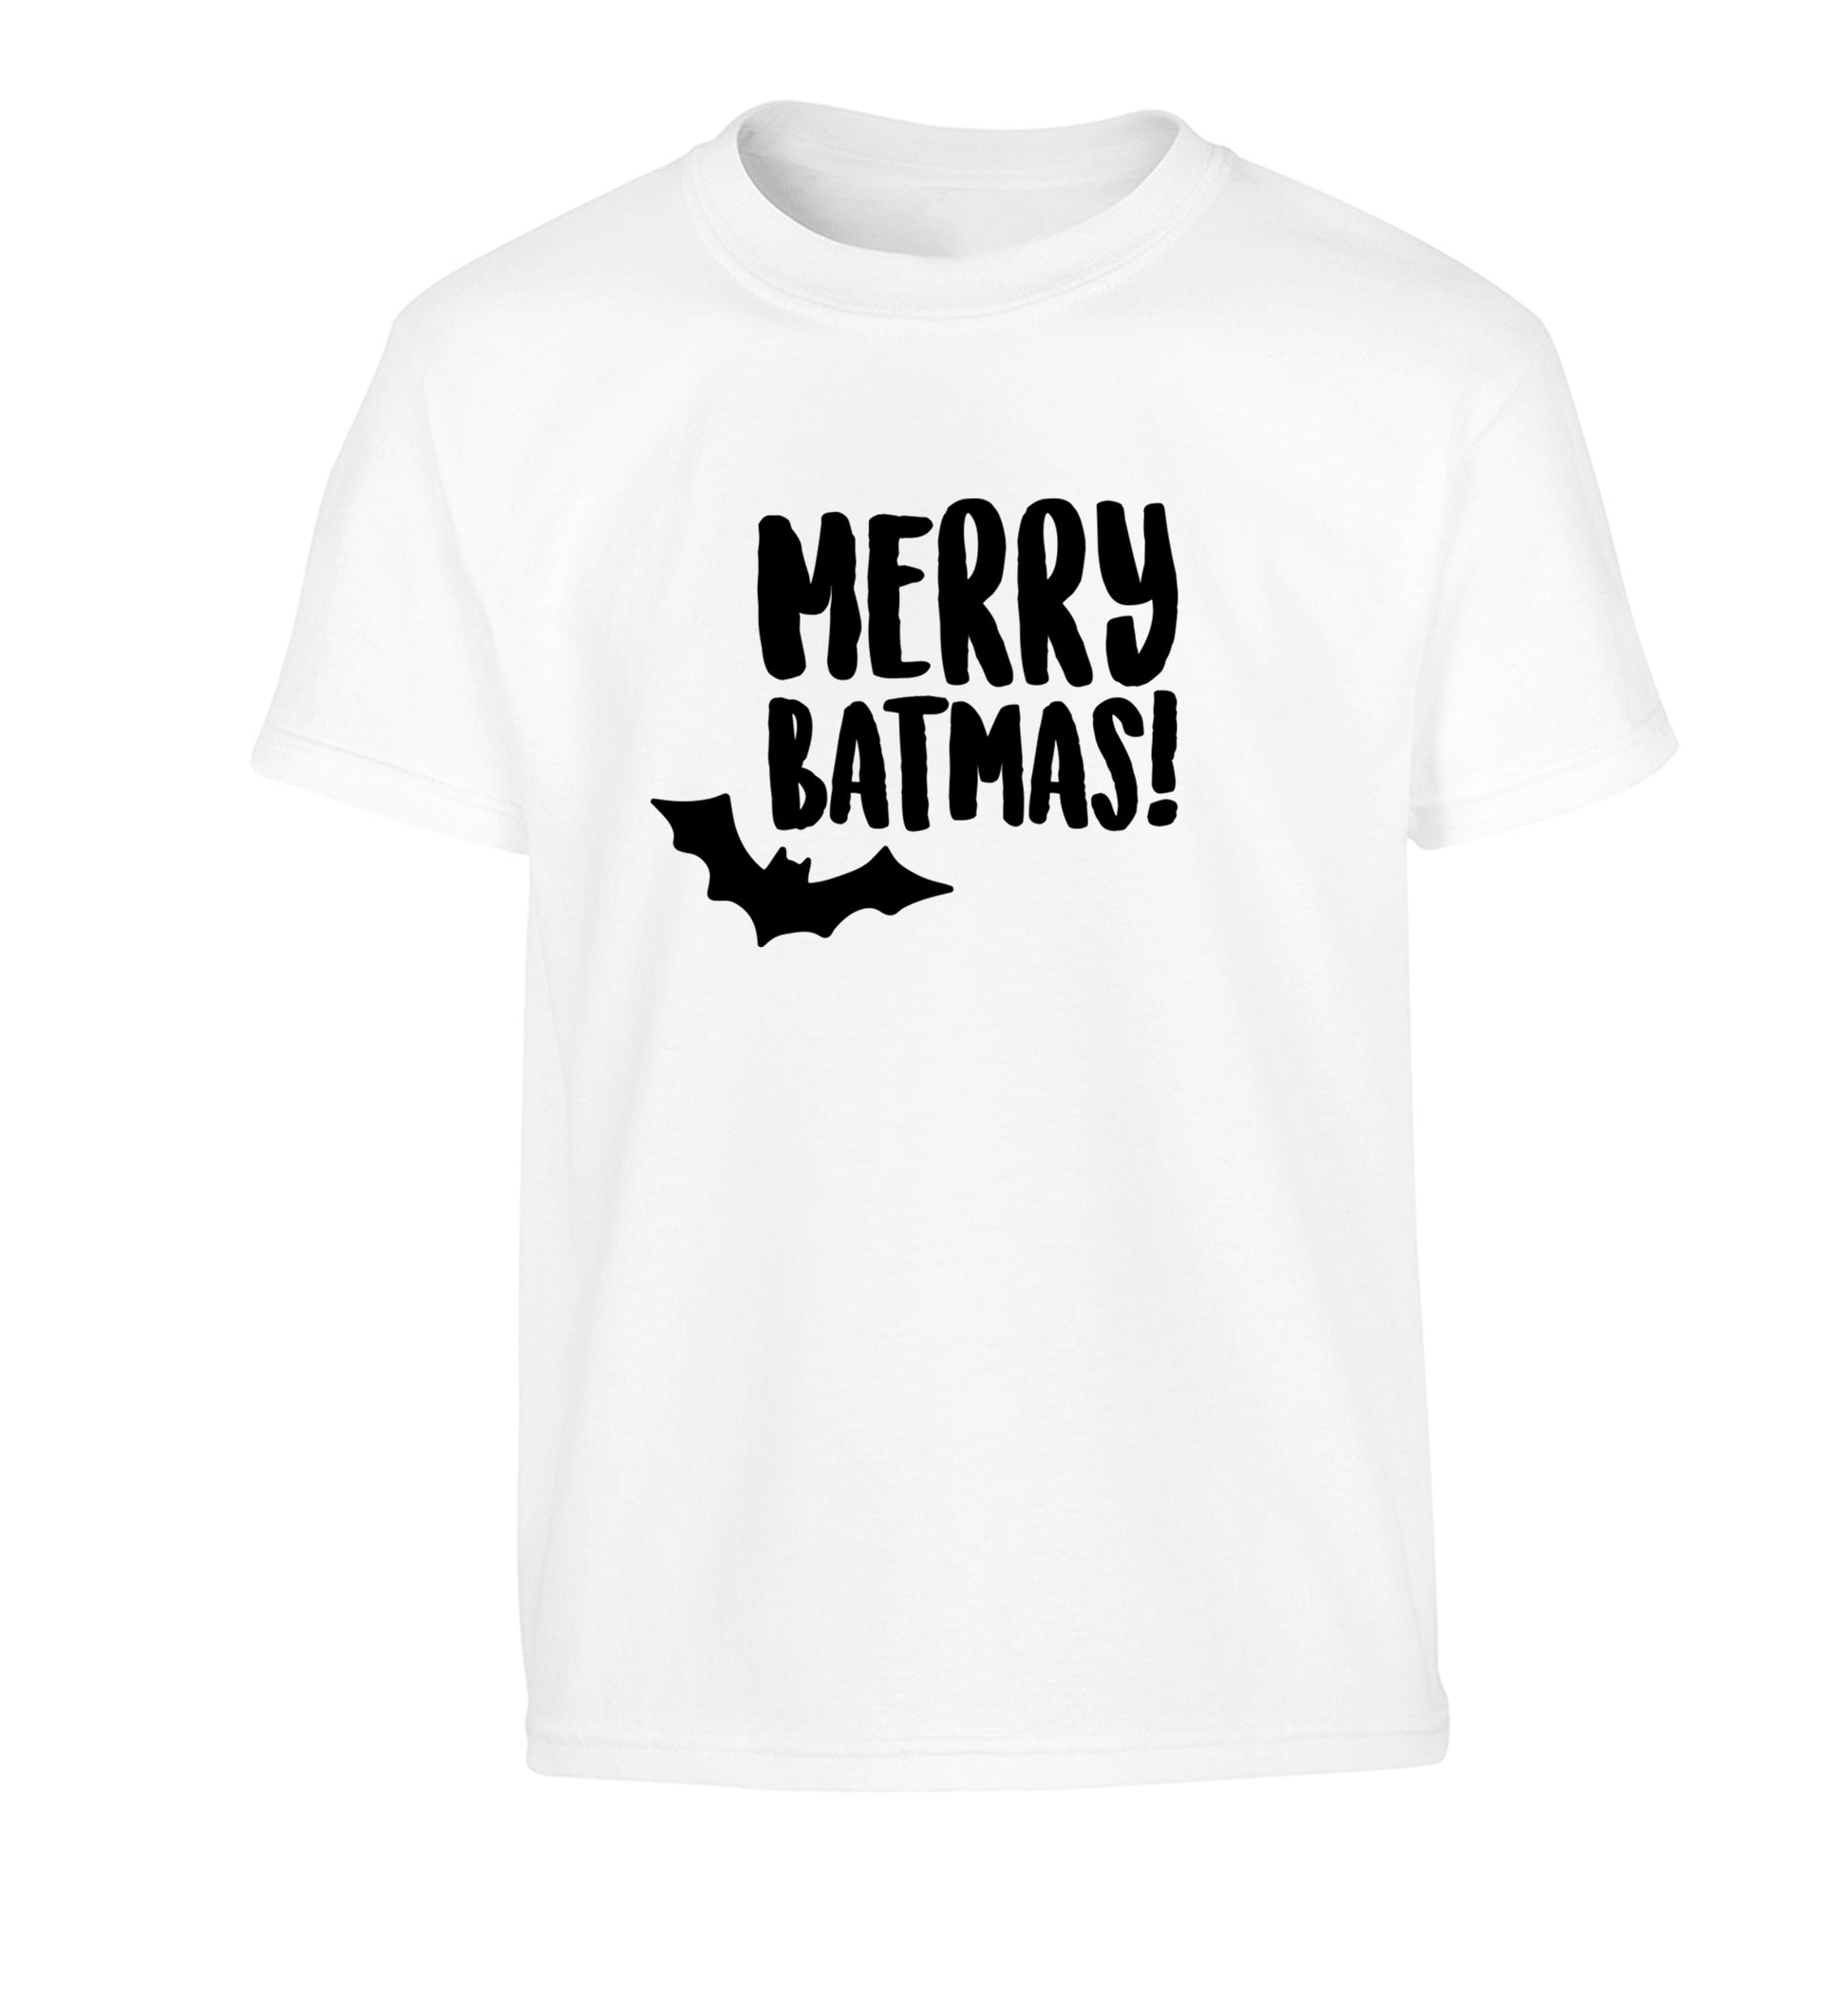 Merry Batmas Children's white Tshirt 12-14 Years